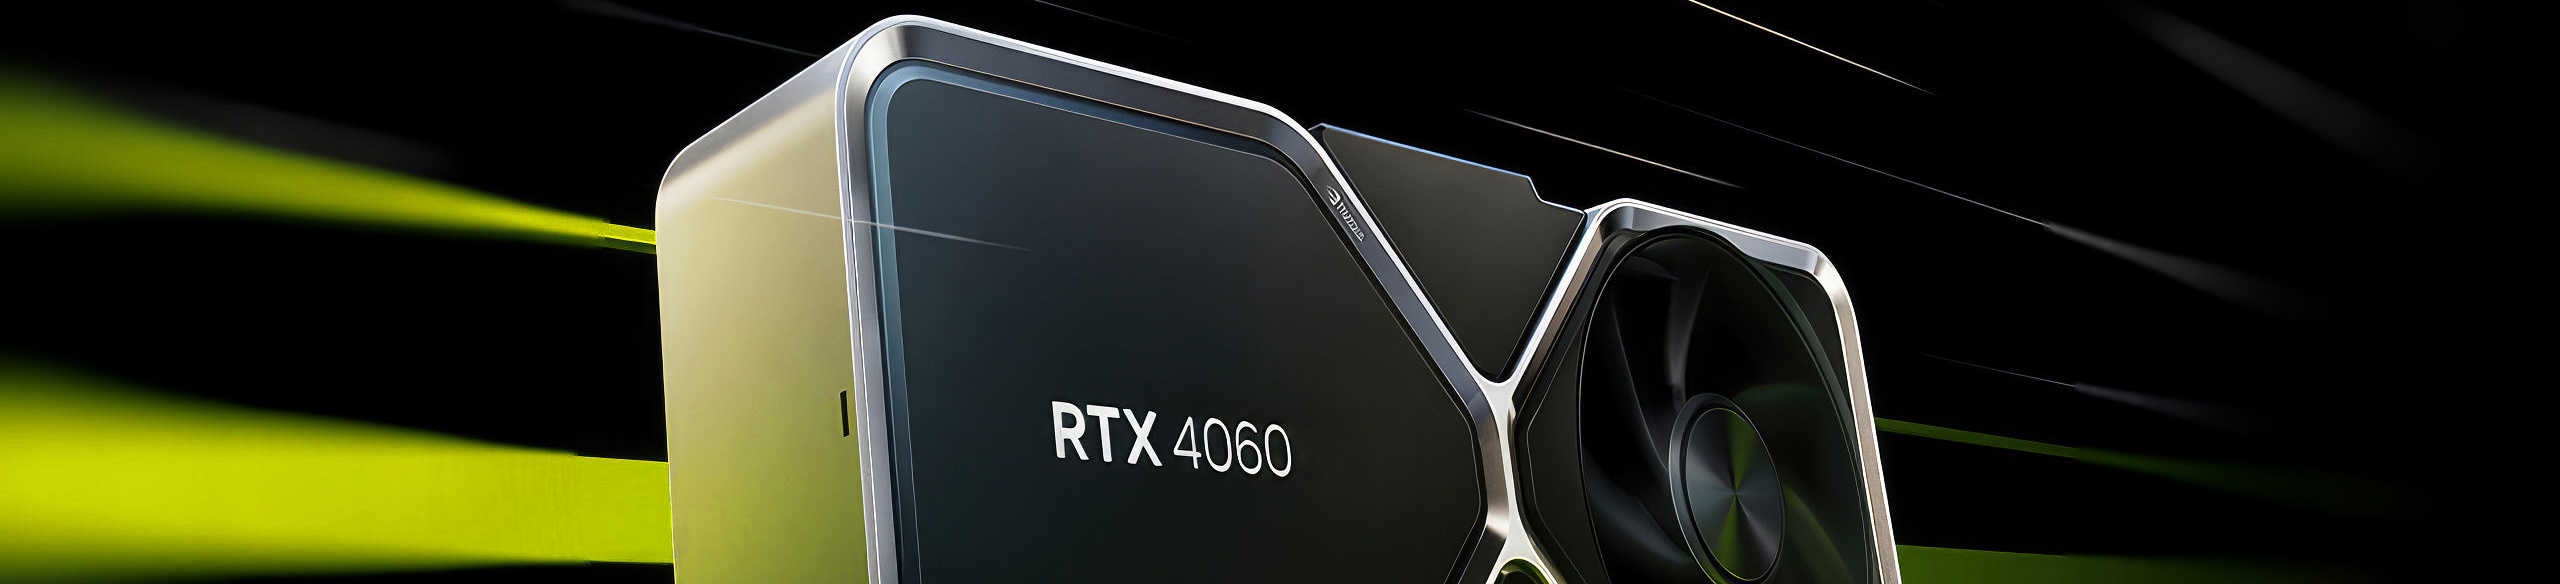 GeForce RTX 4060 Mobile GPU Smokes Desktop 3060 In First Gaming